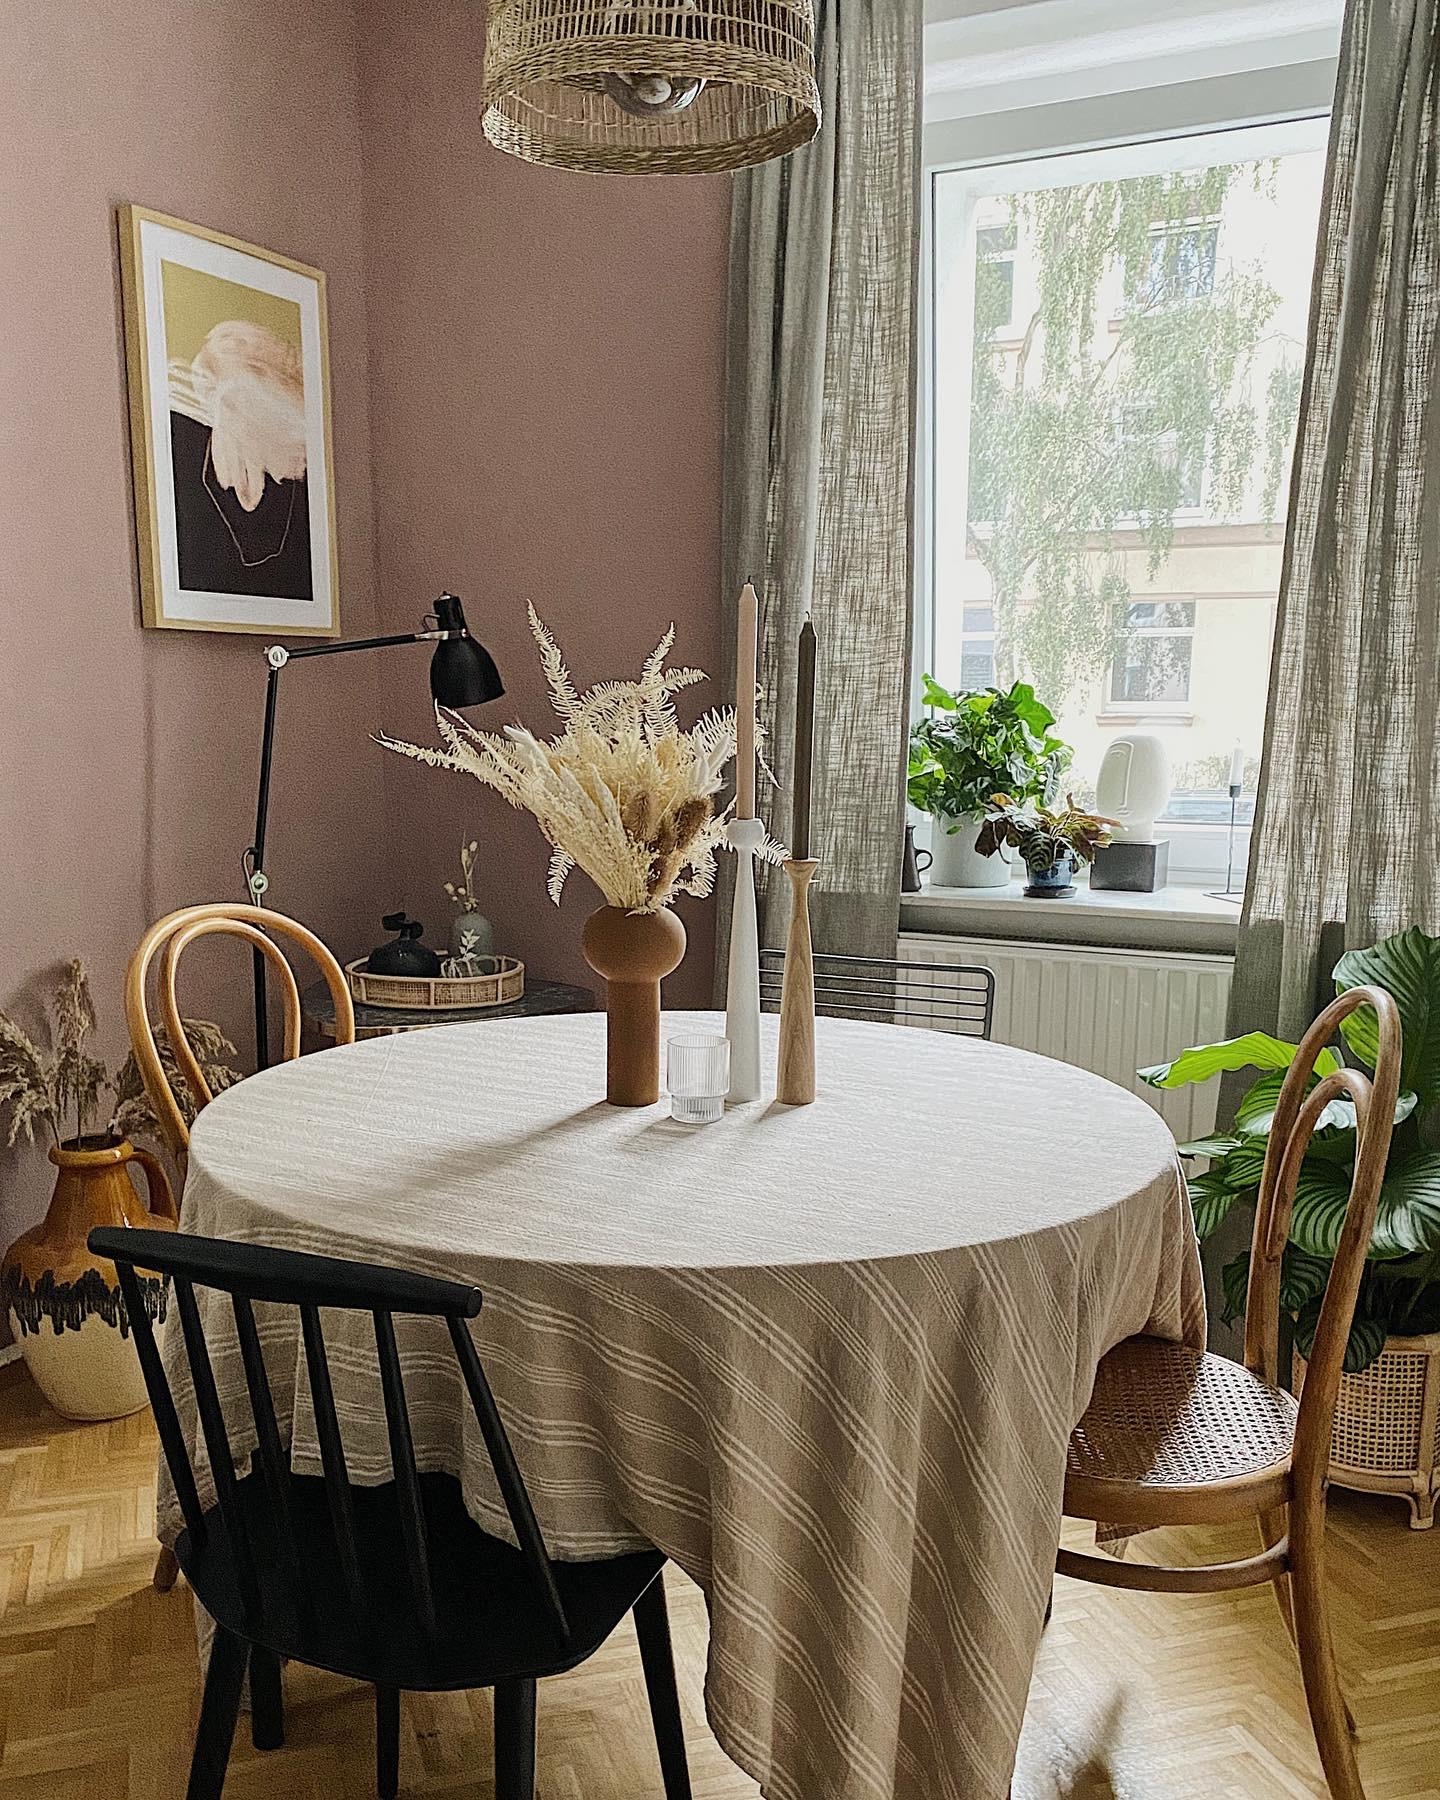 Bei uns im Esszimmer gibt es ein Revival der Tischdecke und des Wiener Geflechts :) #diningroom #trockenblumen